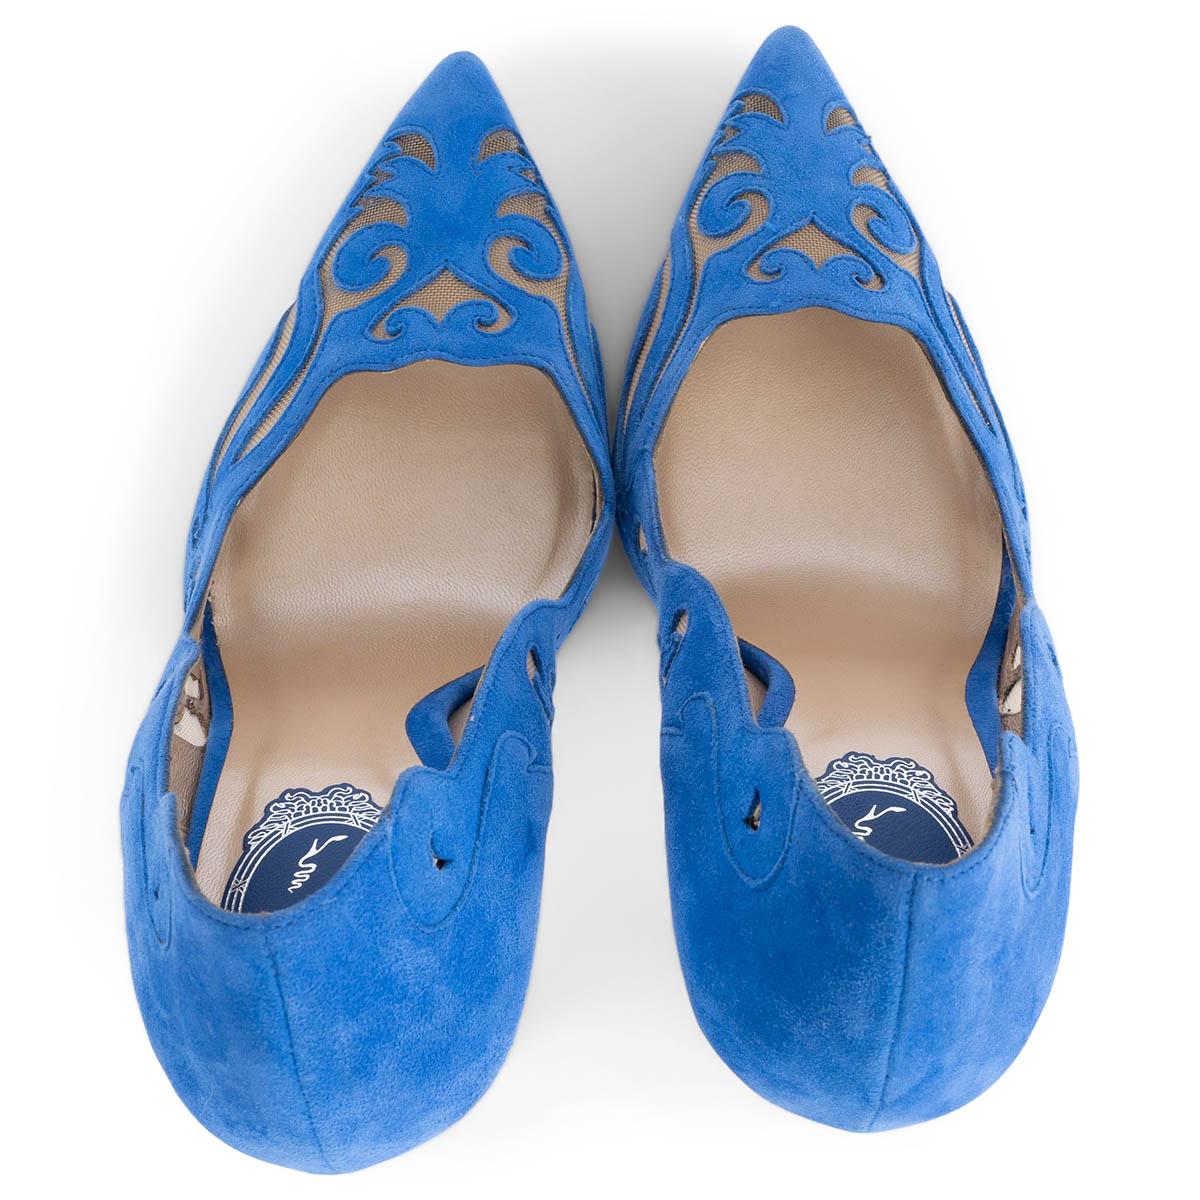 Women's RENE CAOVILLA cobalt blue suede ILLUSION LASER-CUT Pumps Shoes 38.5 For Sale